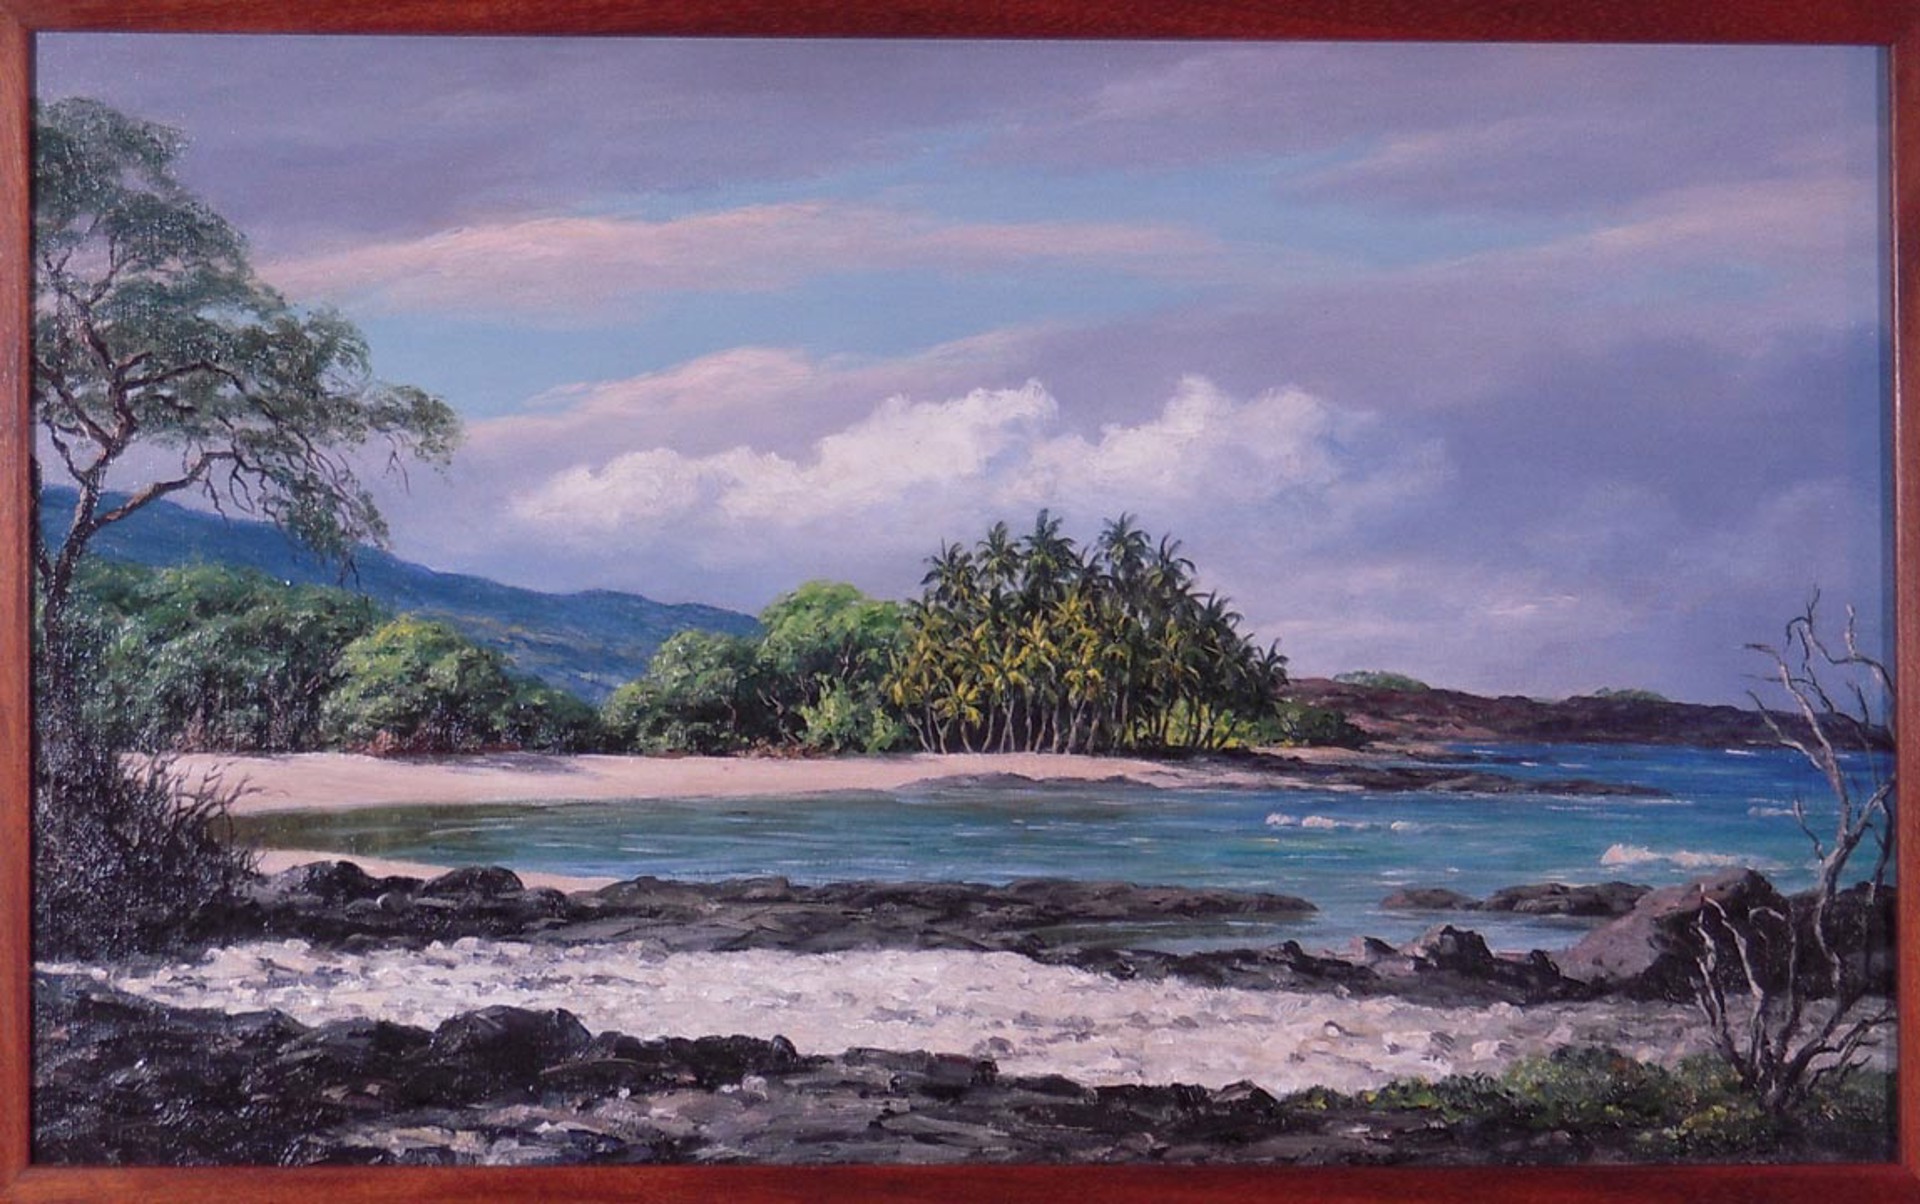 Kalaehuipua'a by Leo Lloyd Sexton